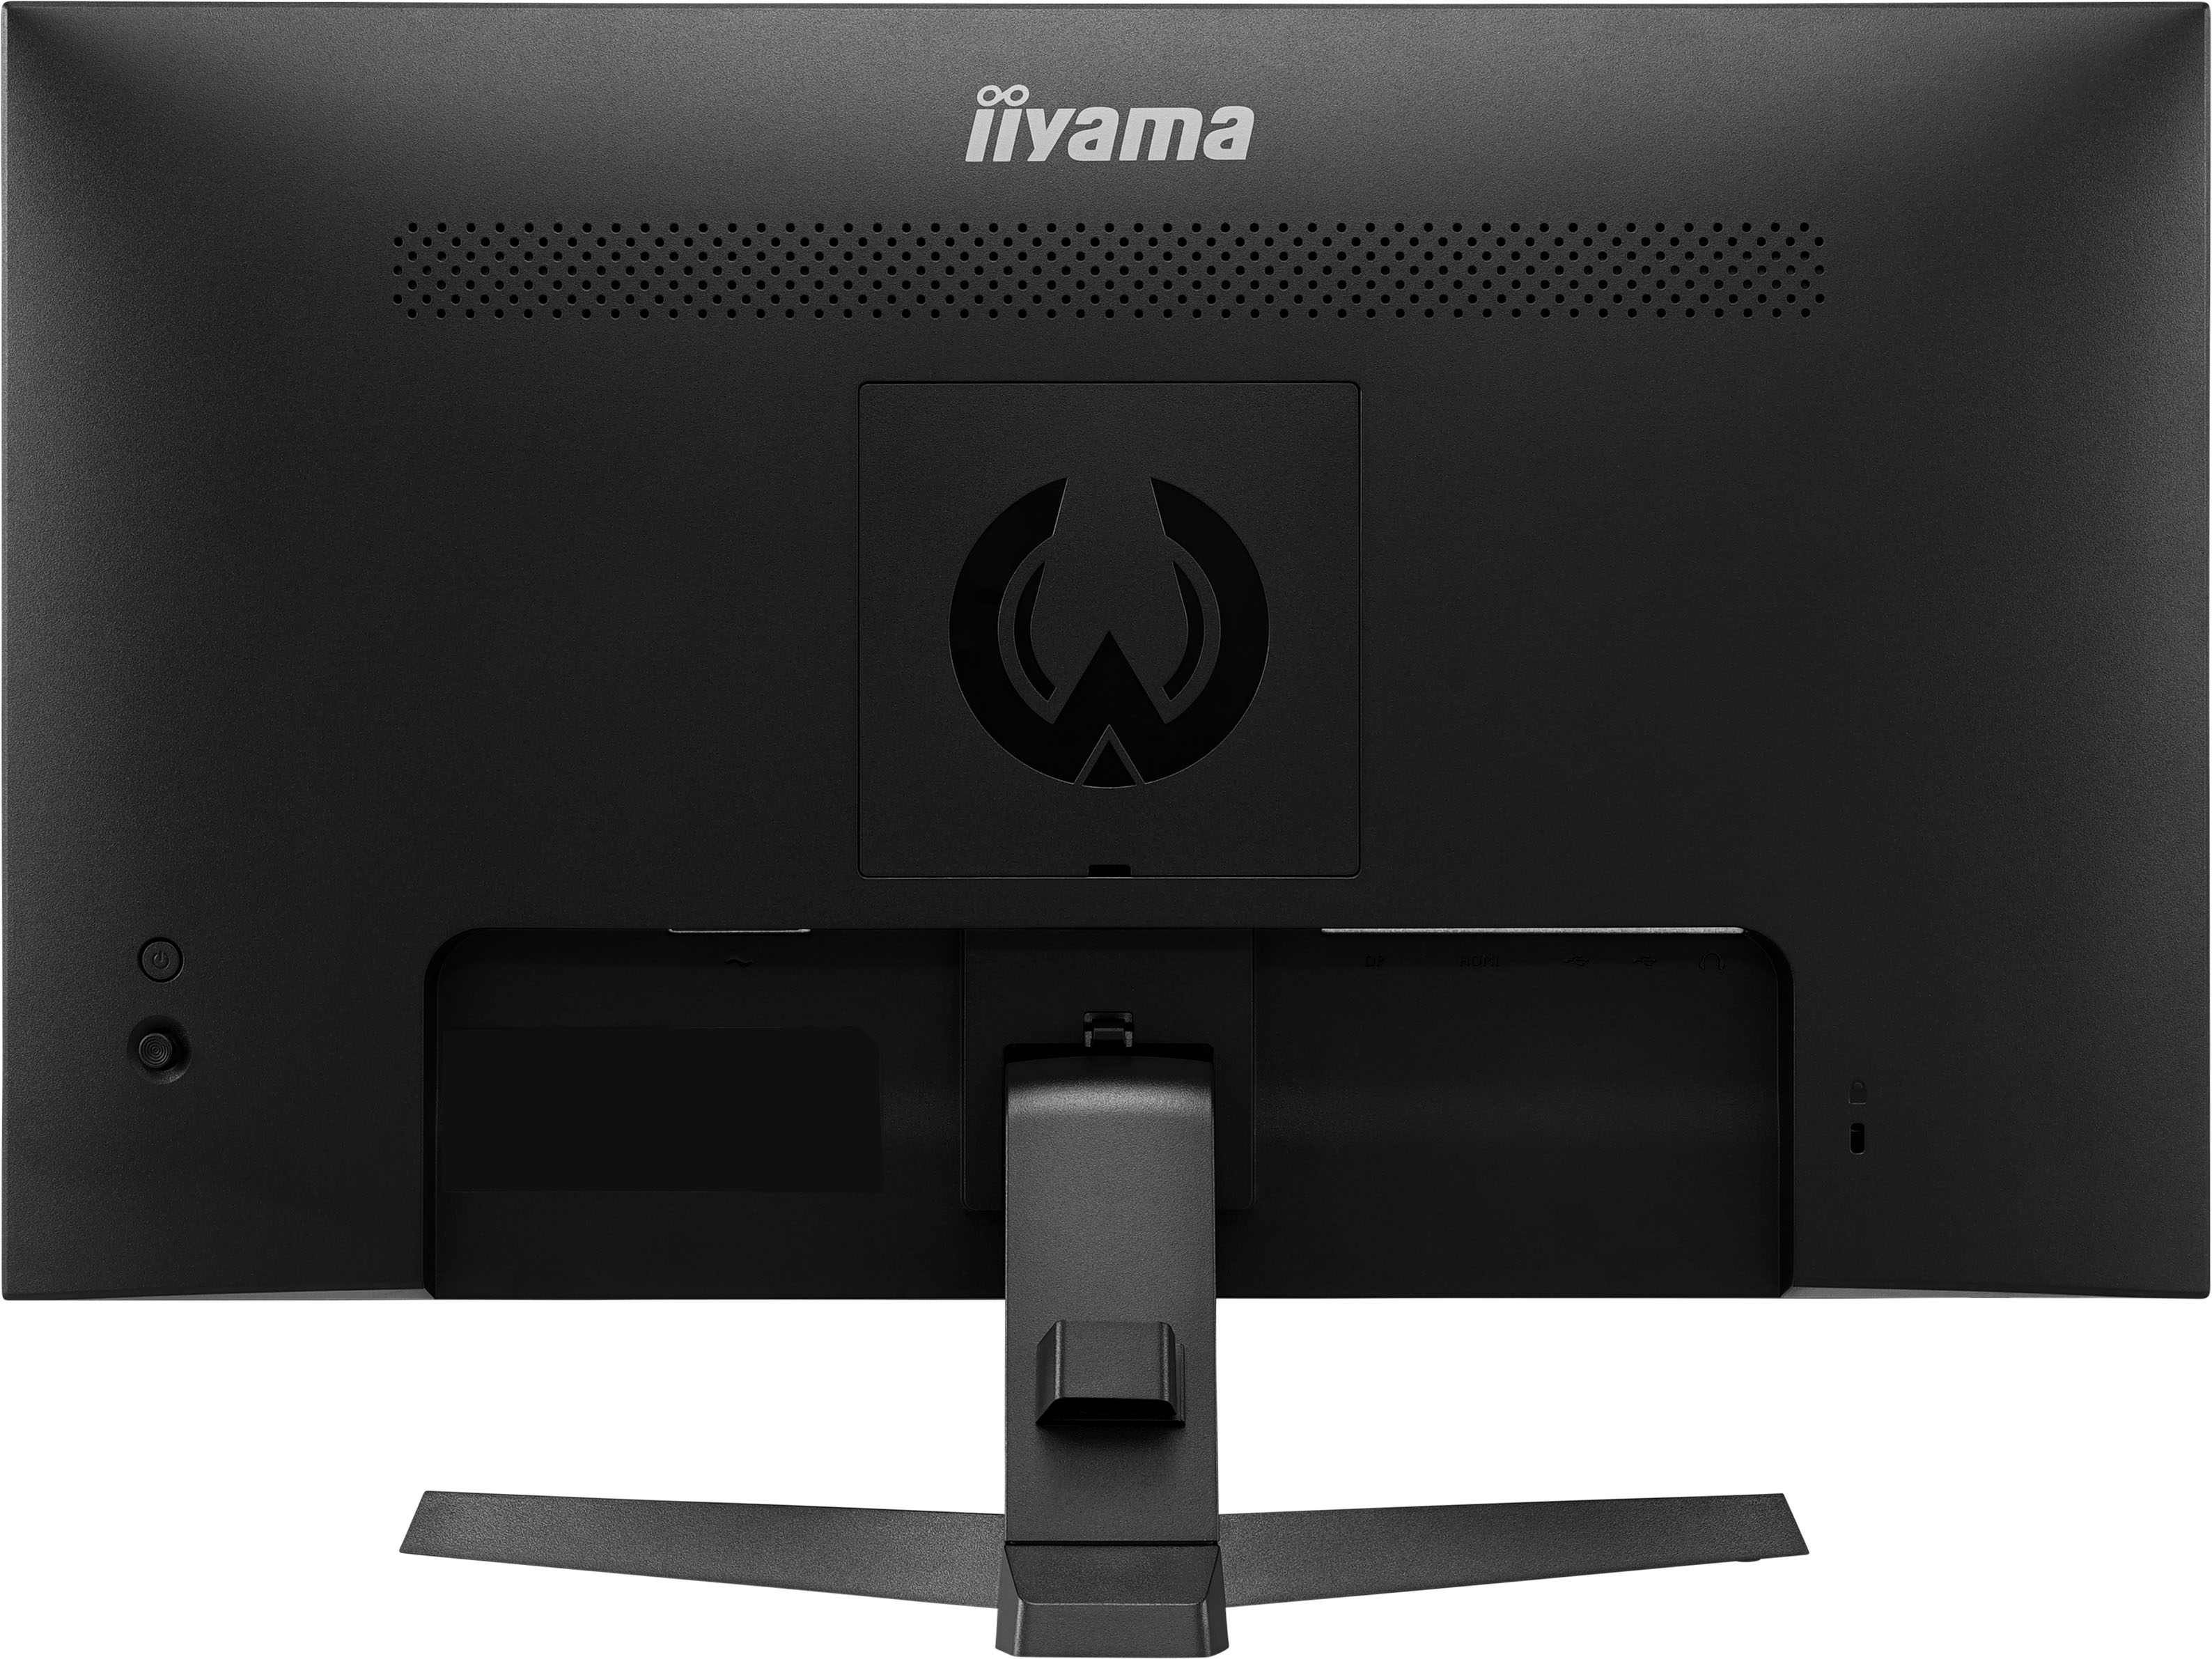 Iiyama G-MASTER G2740QSU-B1 BLACK HAWK  | 27" | 75Hz | WQHD Gaming-Monitor